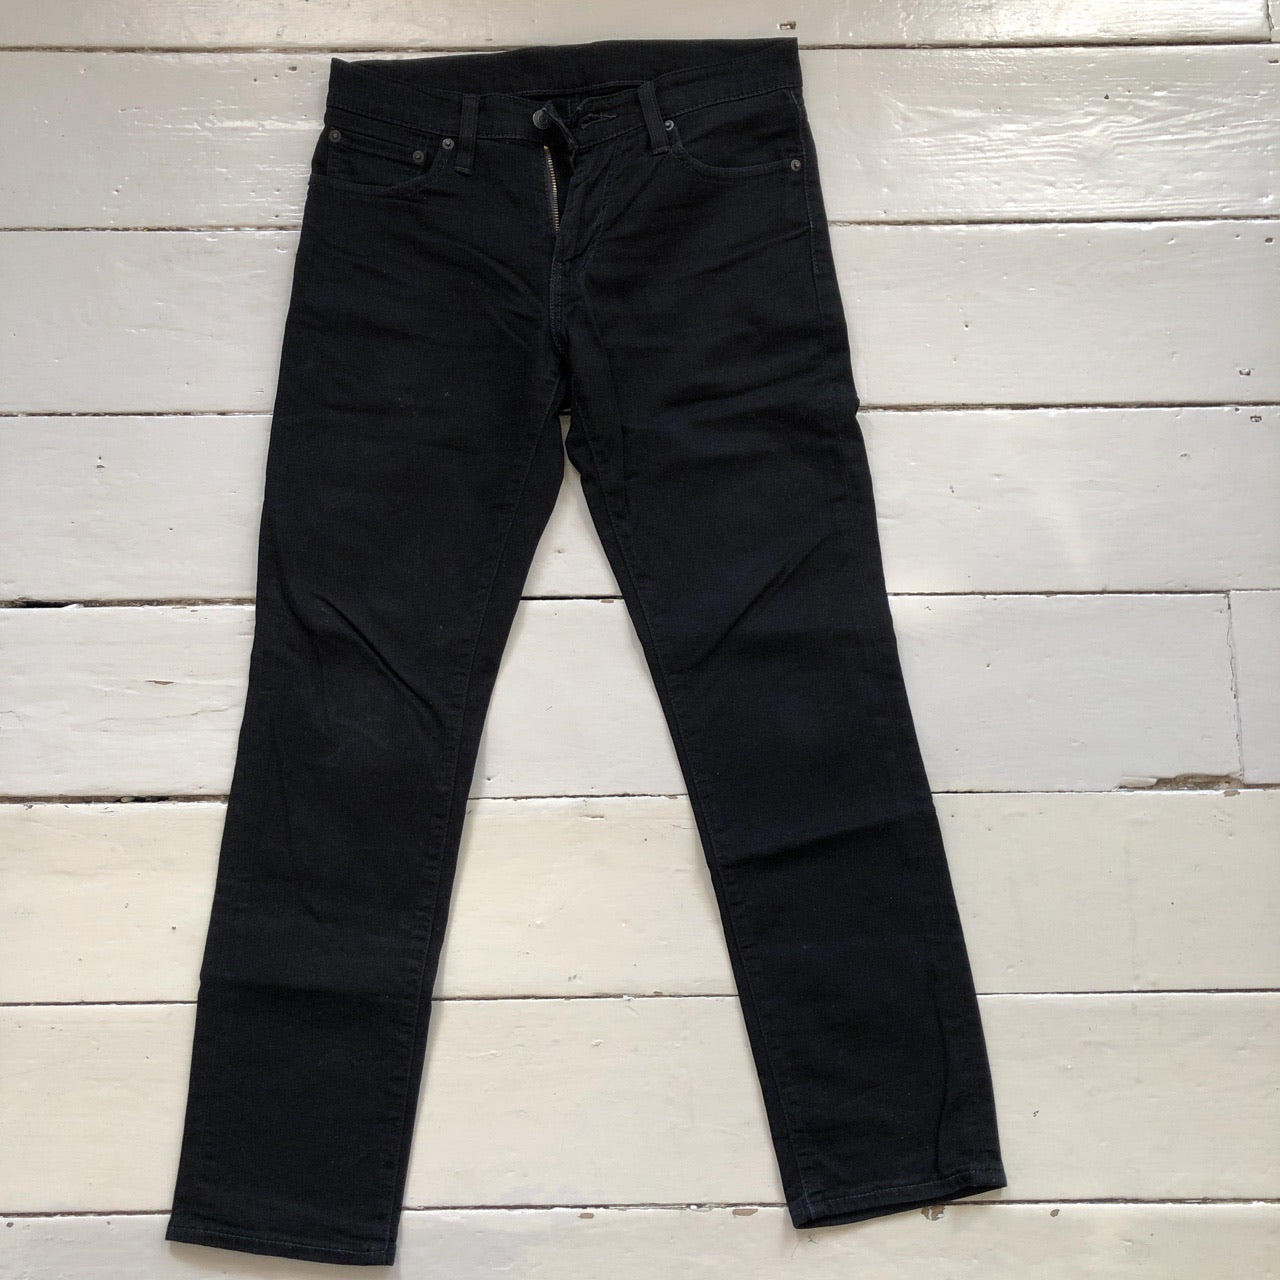 Levis Black 511 Slim Fit Jeans (30/30)